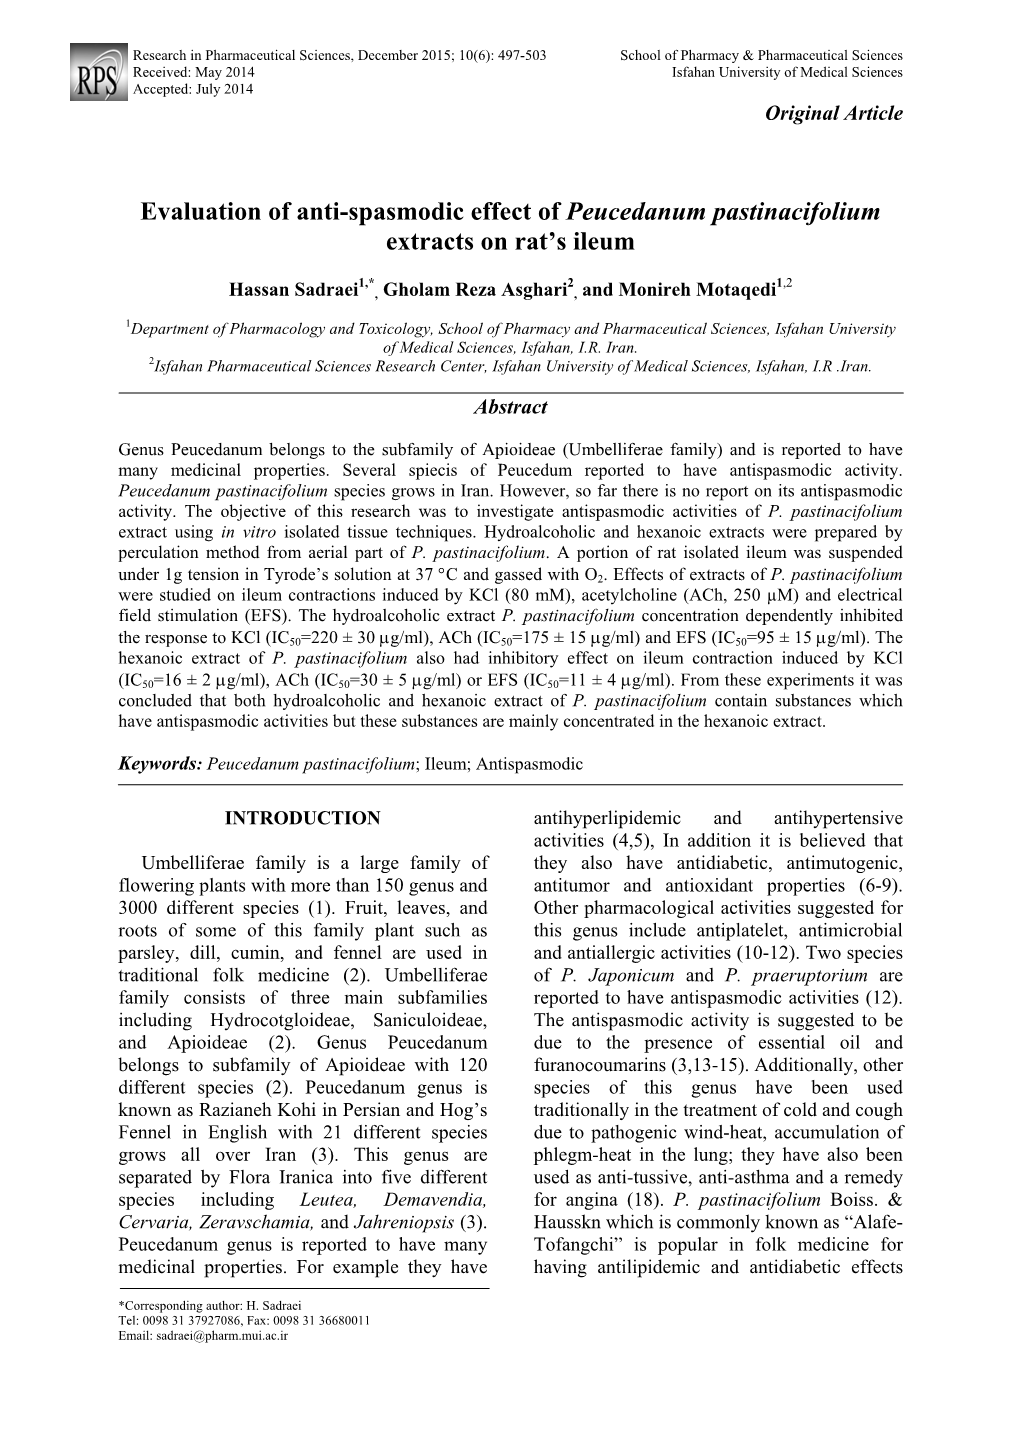 Evaluation of Anti-Spasmodic Effect of Peucedanum Pastinacifolium Extracts on Rat’S Ileum